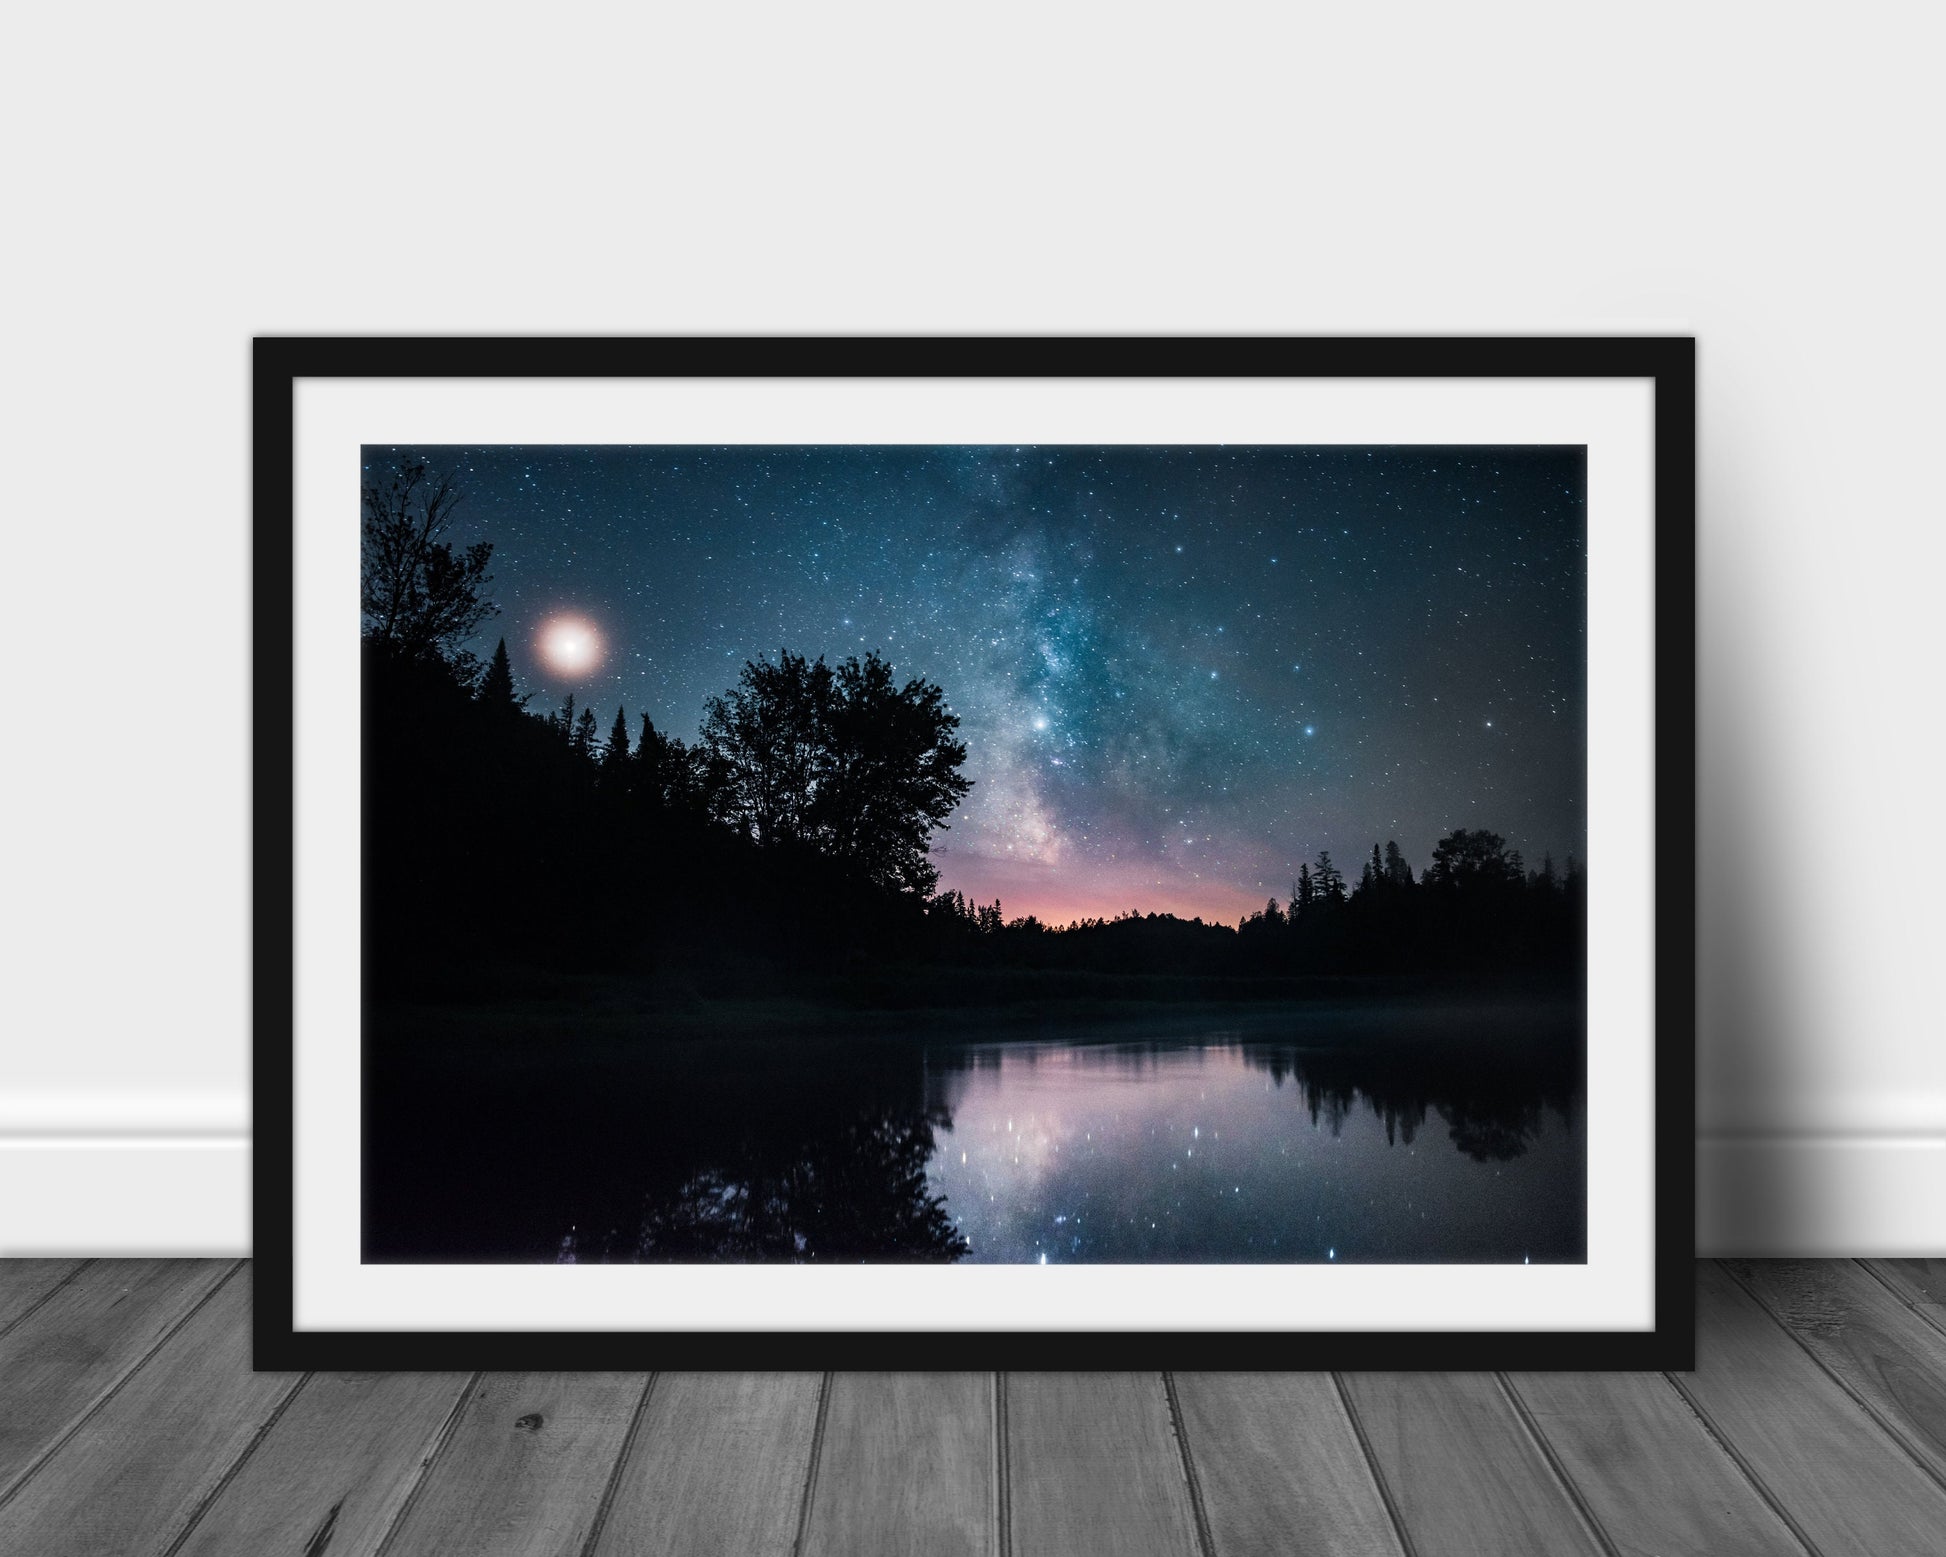 Milky Way and Moose Pond - Adirondacks, NY